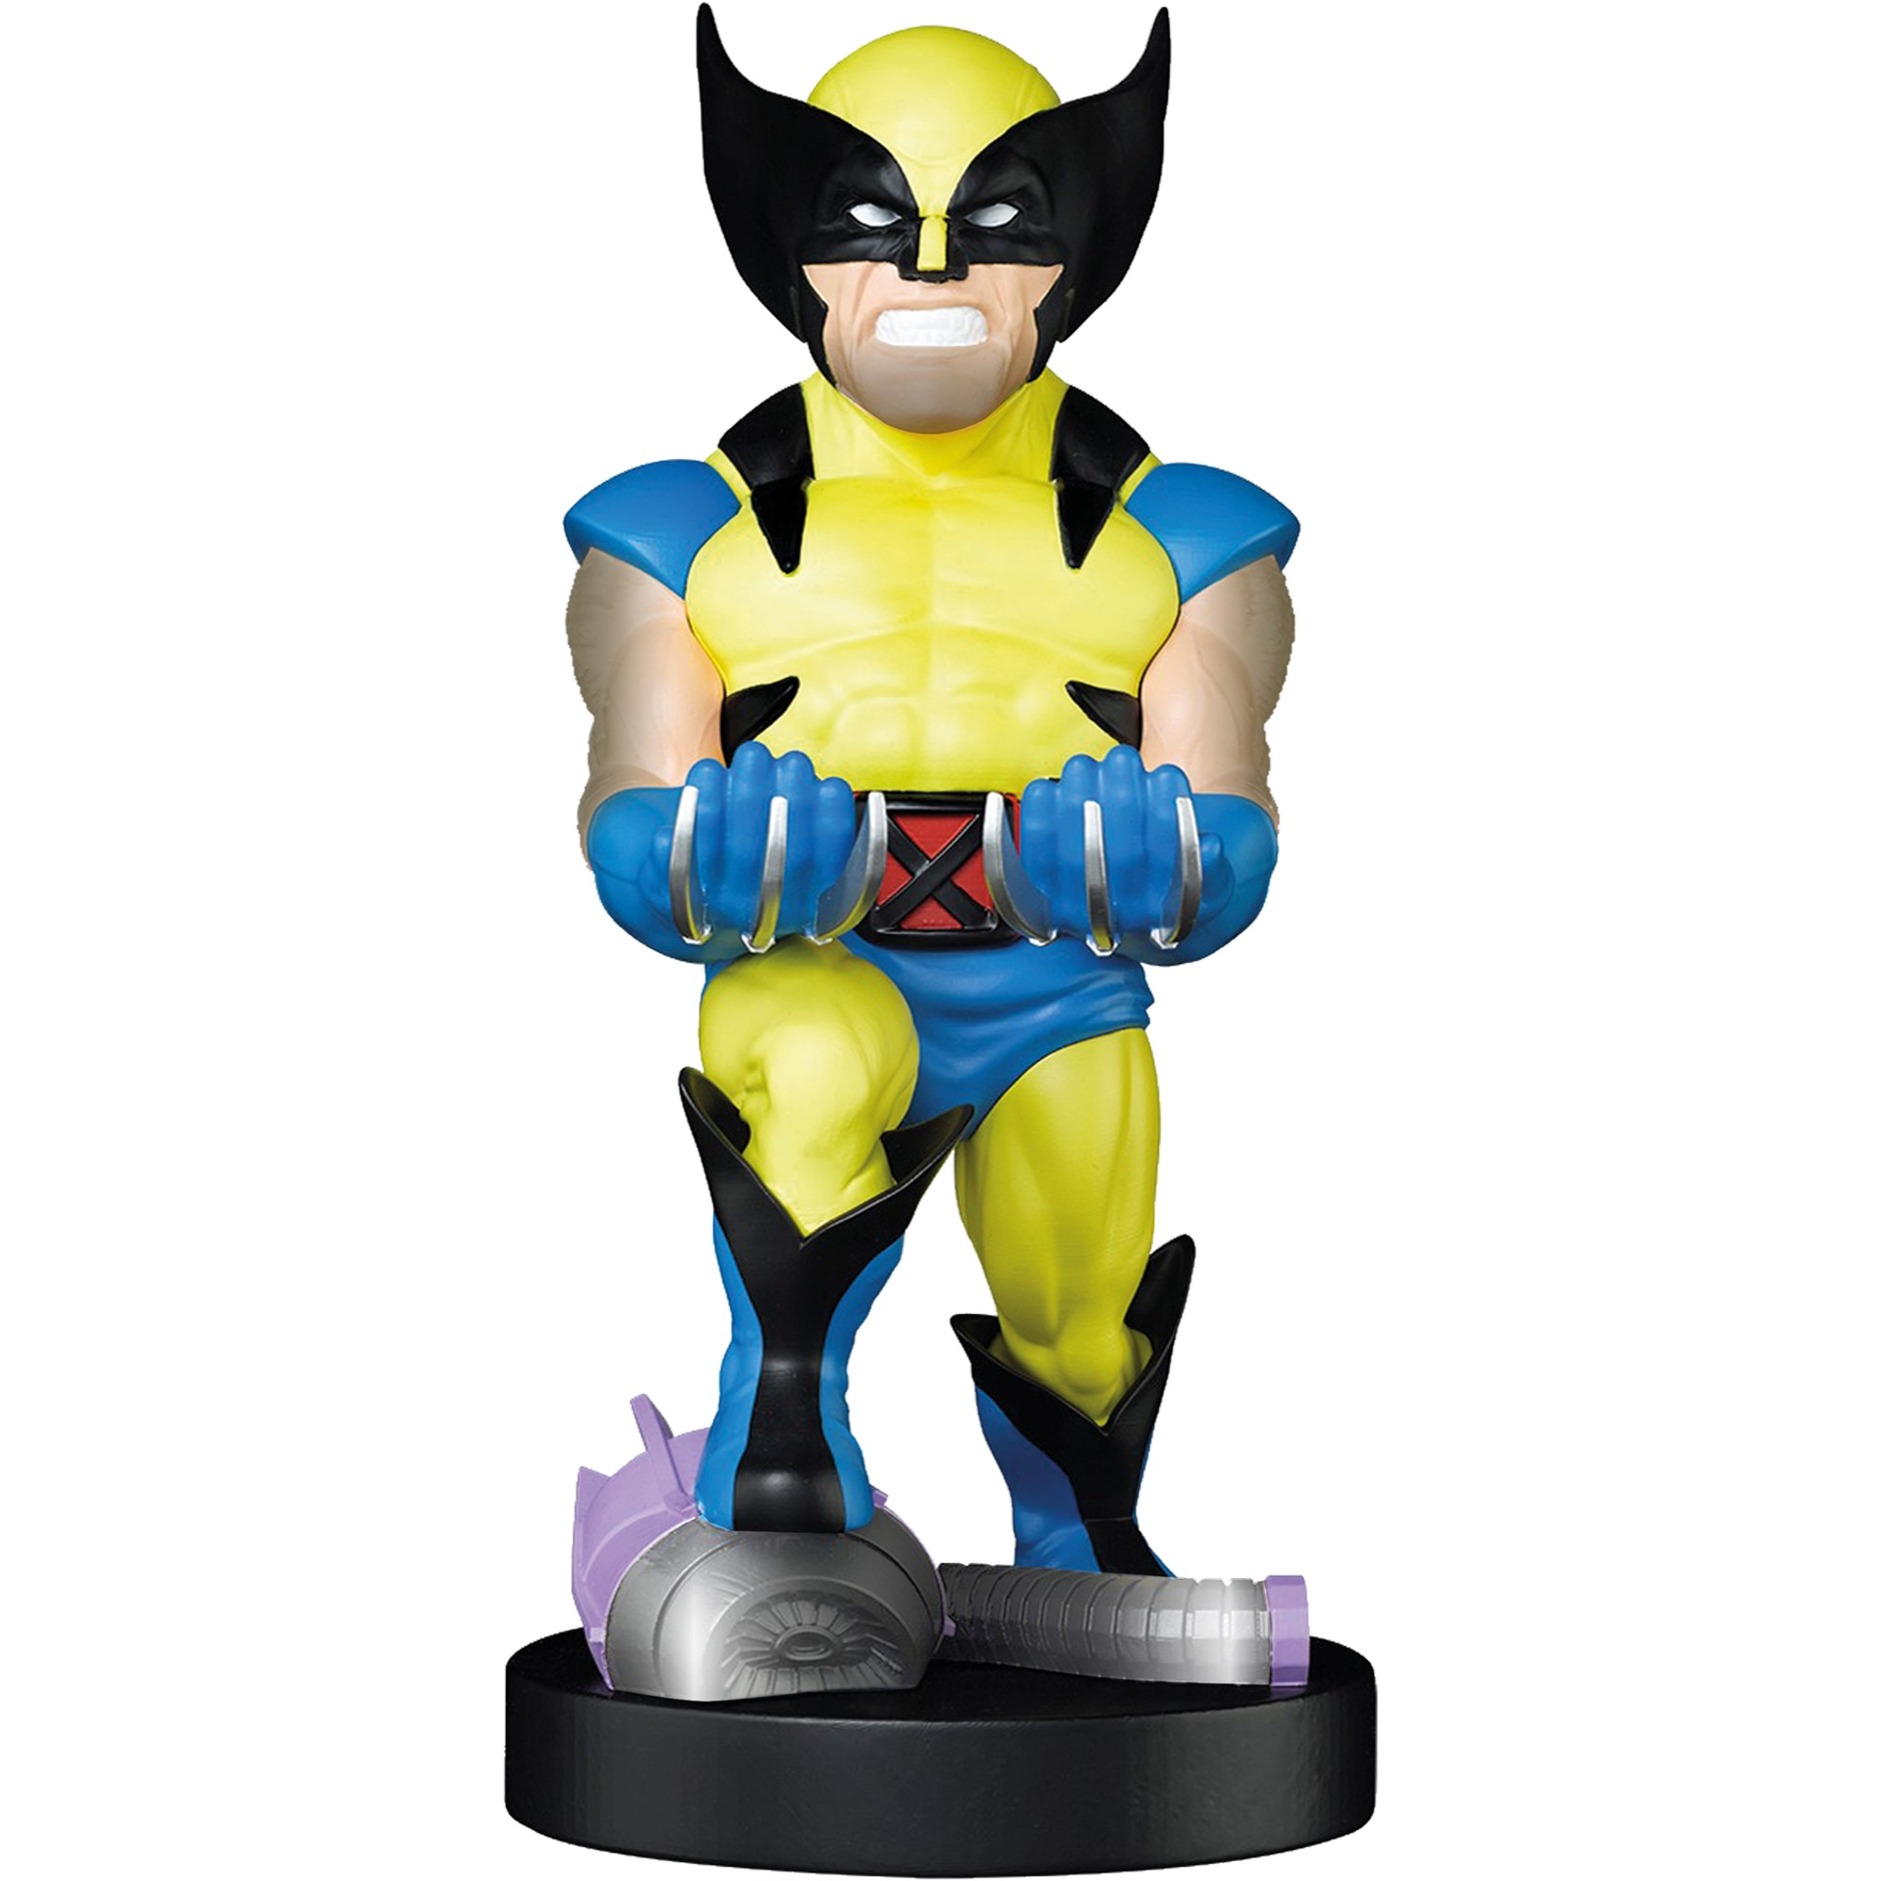 Image of Alternate - Wolverine, Halterung online einkaufen bei Alternate